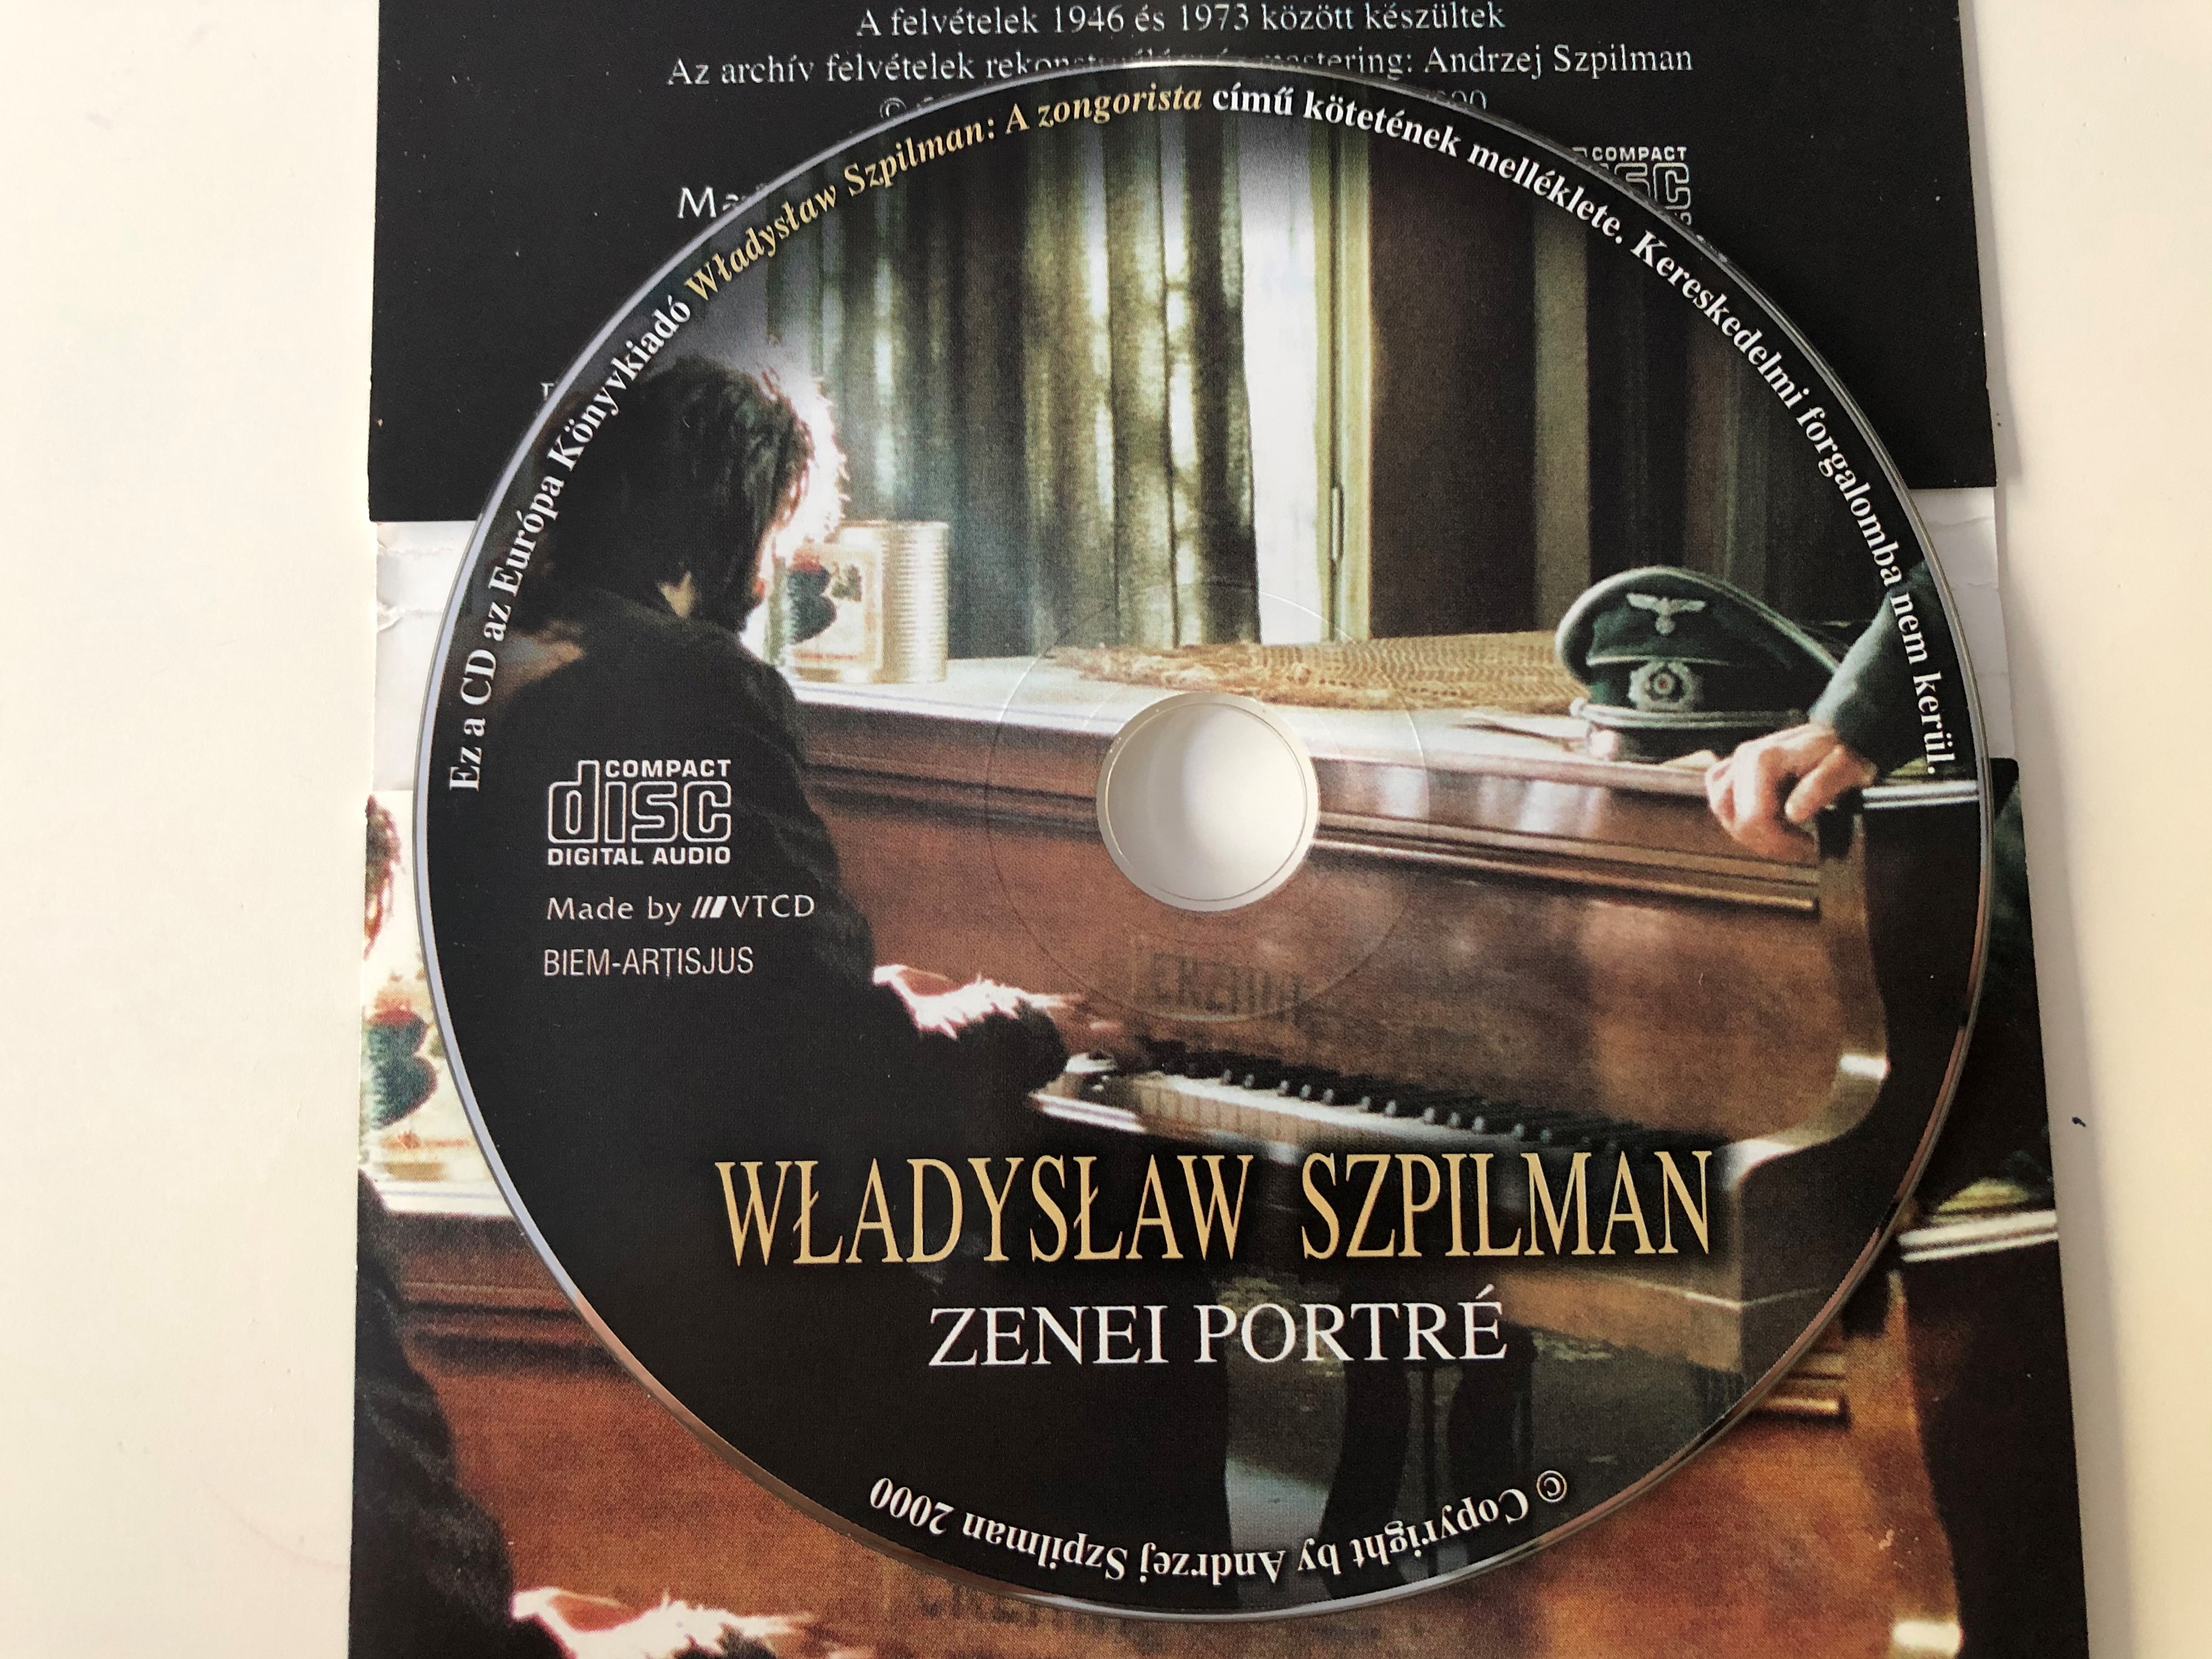 w-adys-aw-szpilman-zenei-portre-audio-cd-2000-3-.jpg